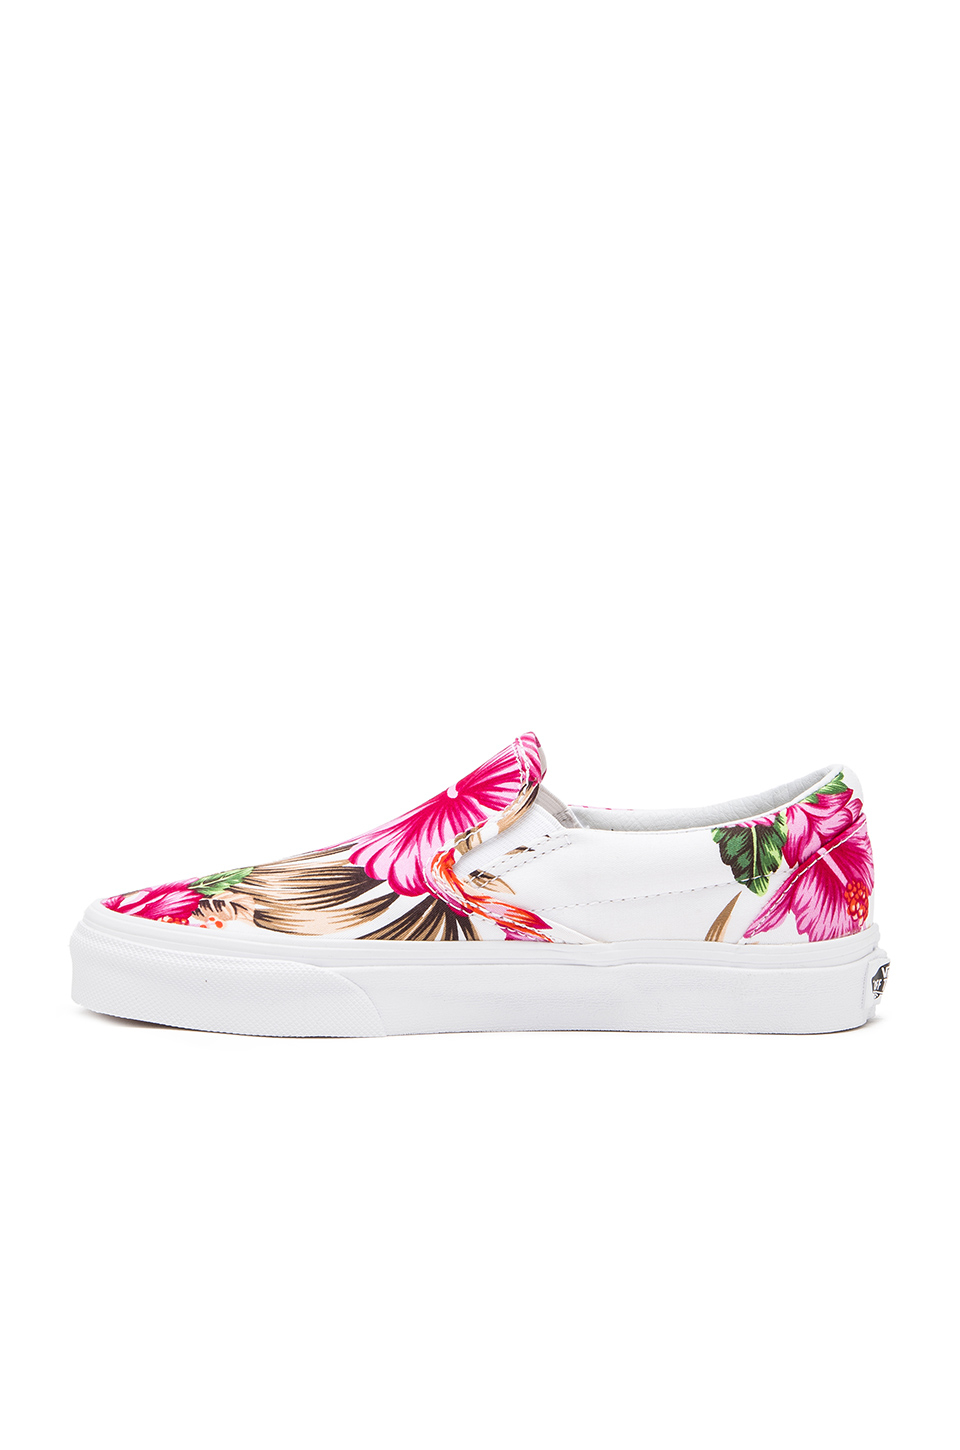 Vans Hawaiian Floral On Sneaker in White (Pink) Lyst